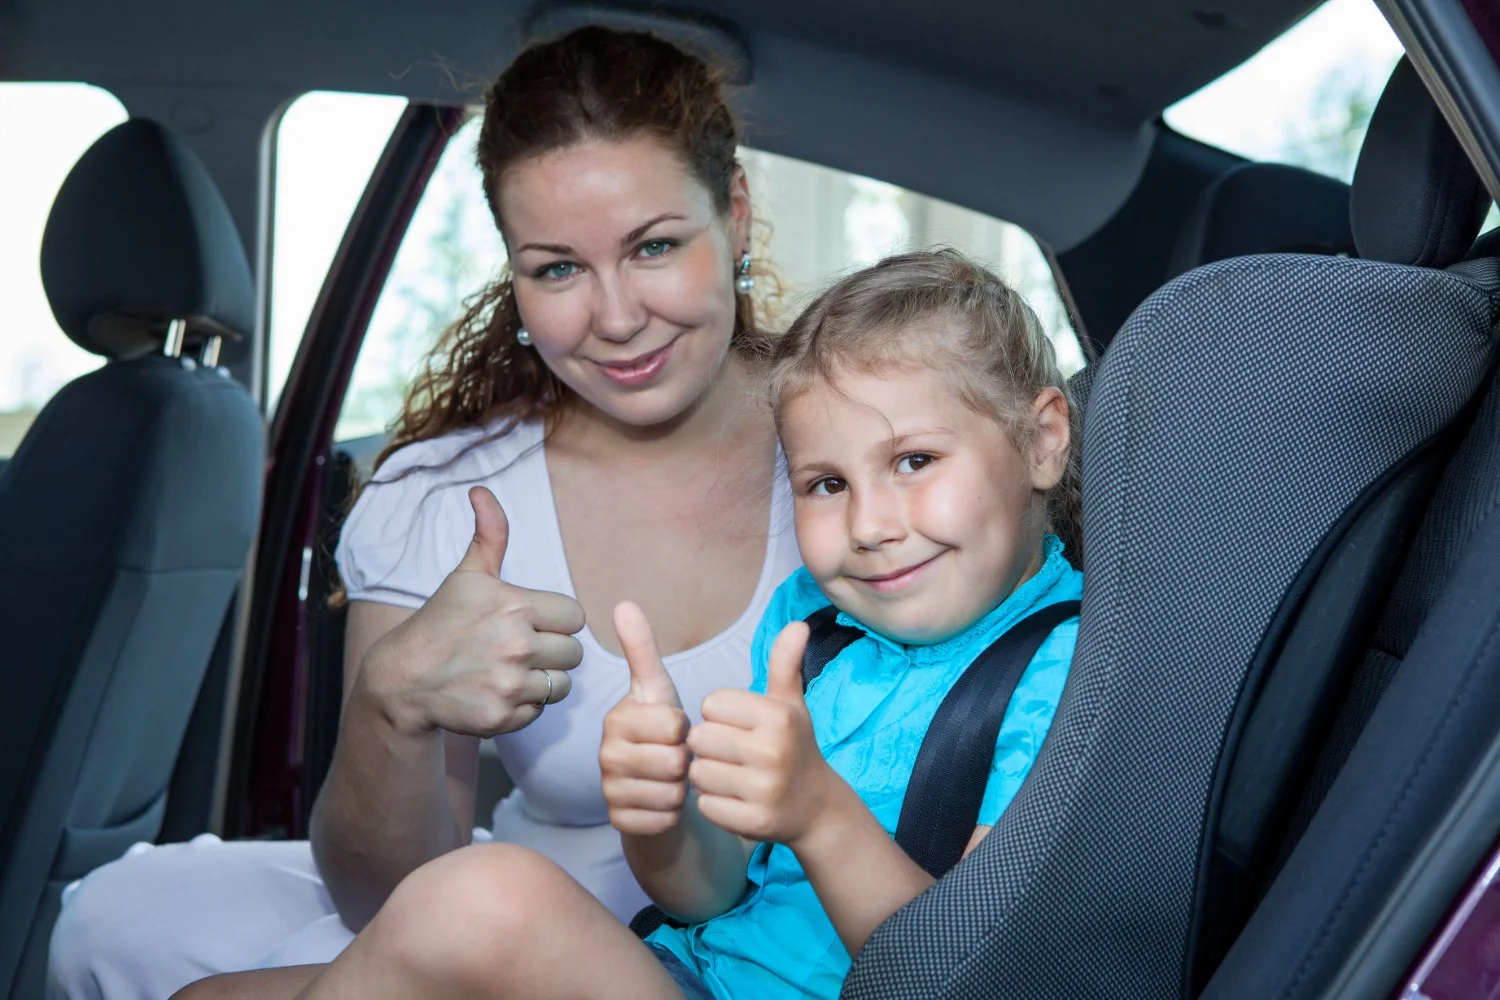  Bezpečnostné pásy a detské sedačky sú v Chorvátsku povinné